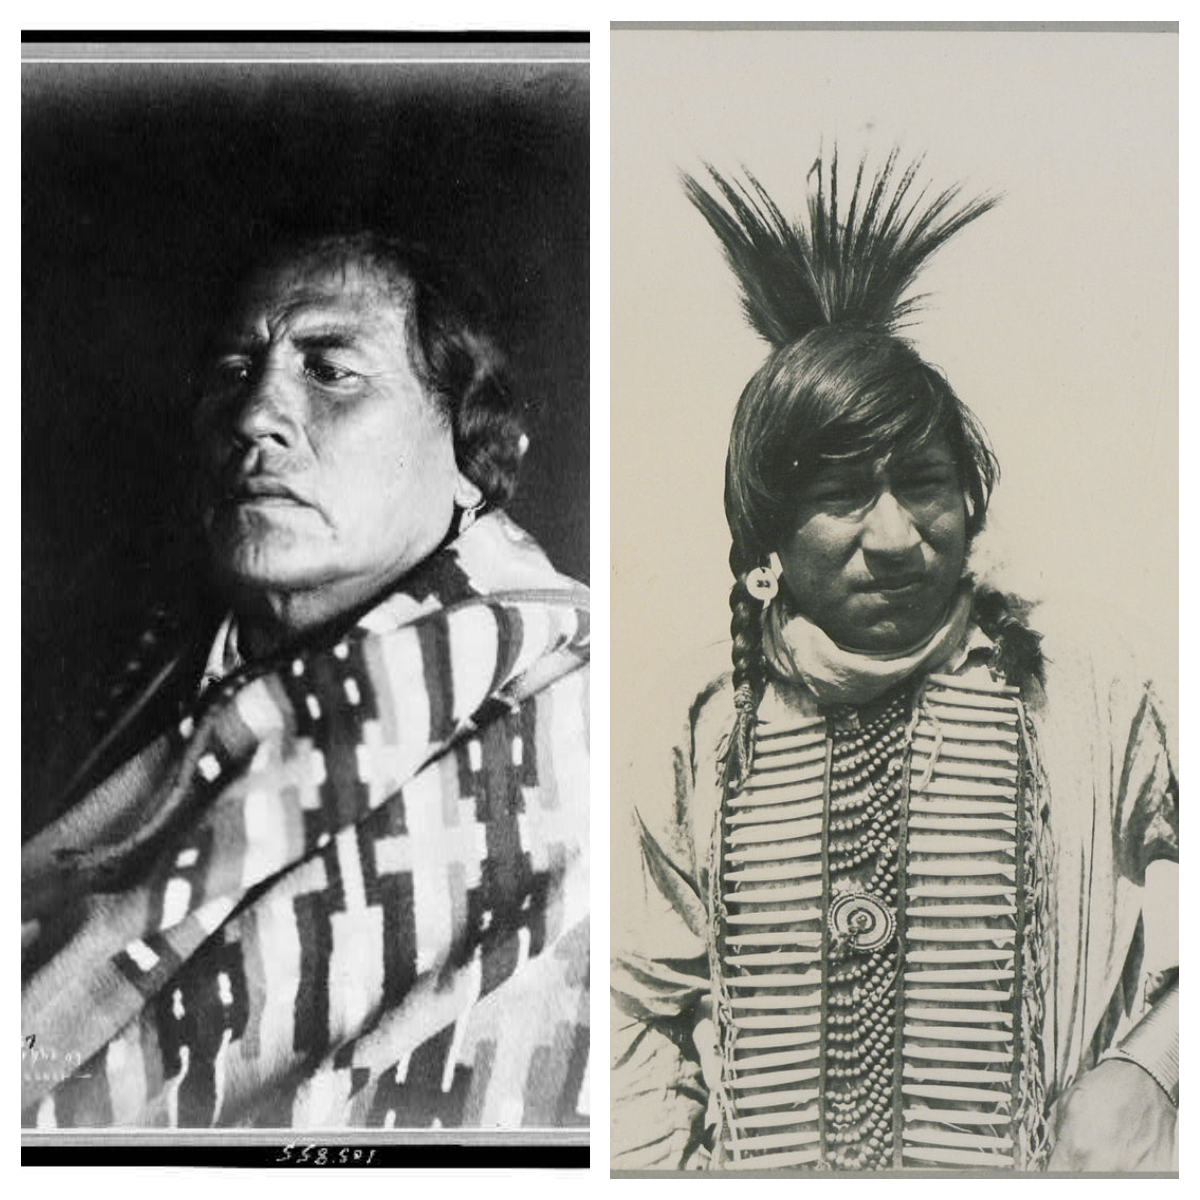 Original photographs of Crow Indians